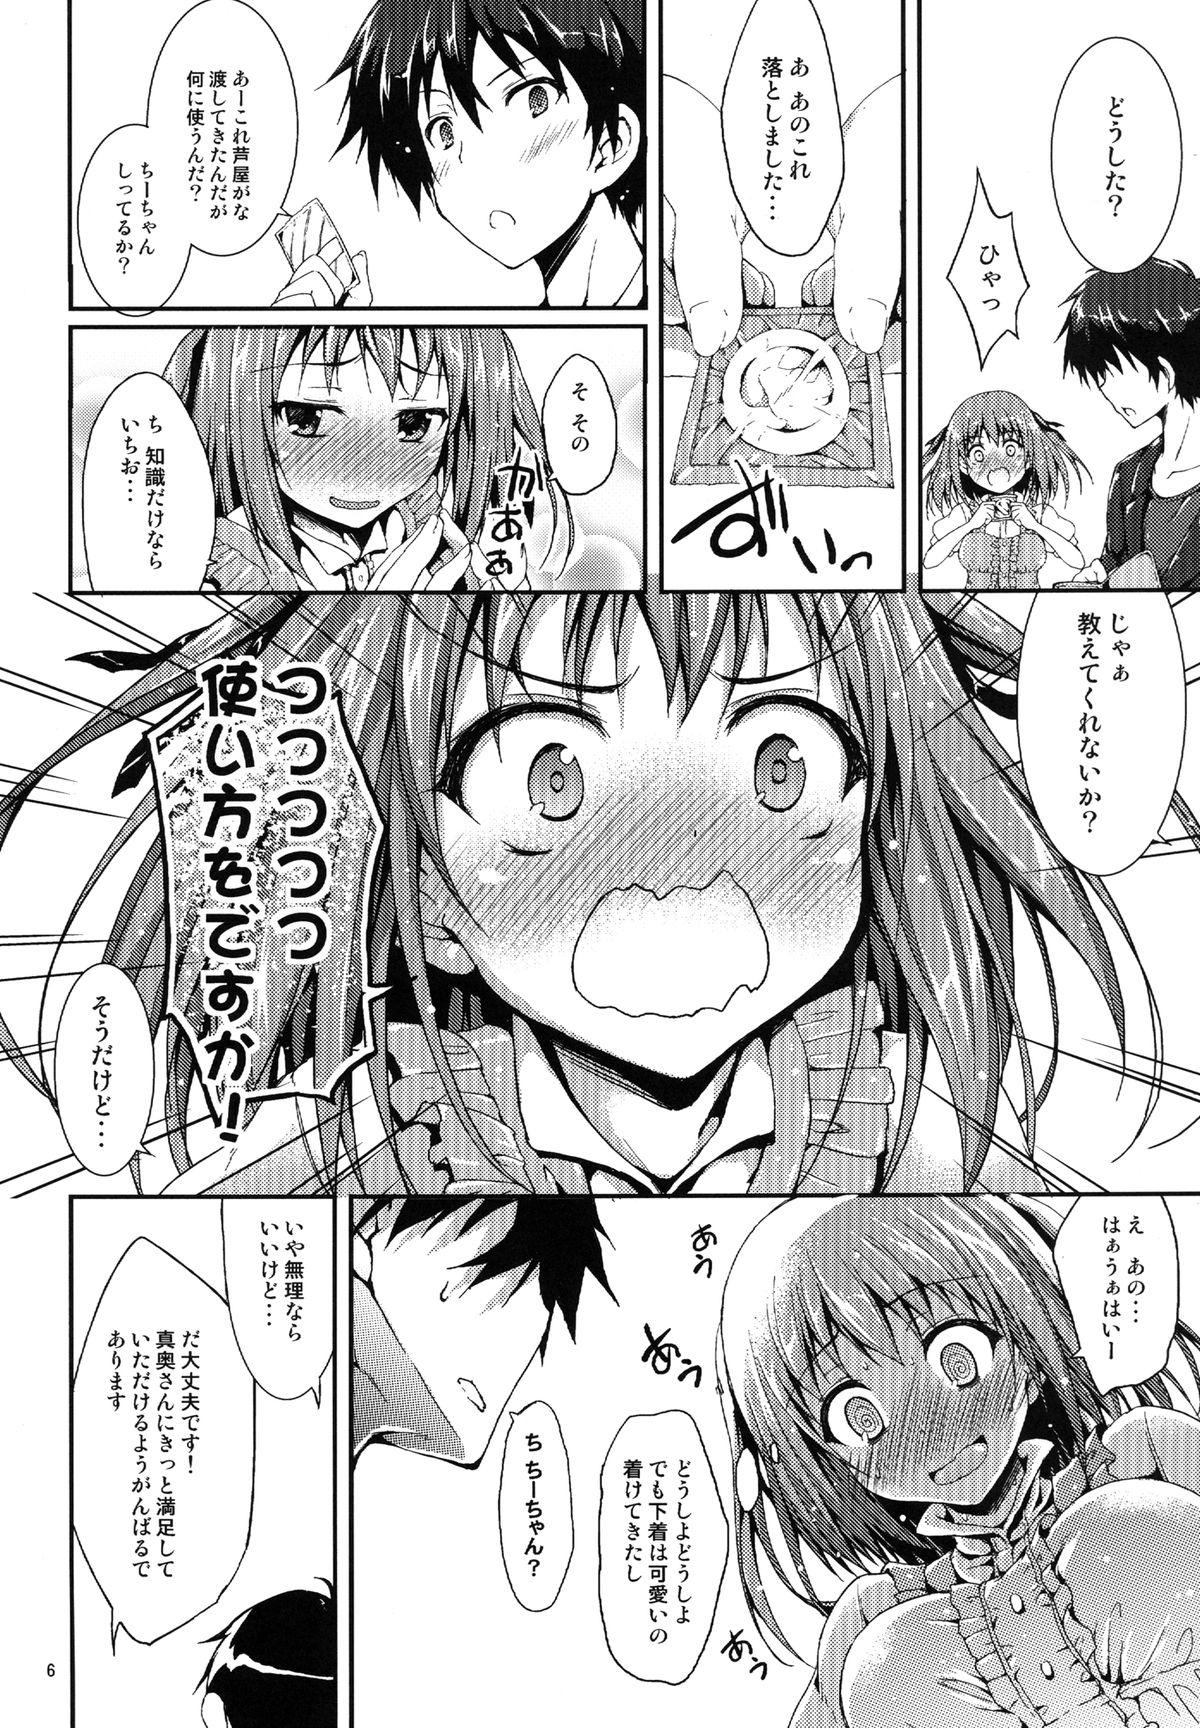 Breast Koisuru Chi-chan! - Hataraku maou-sama Redbone - Page 5